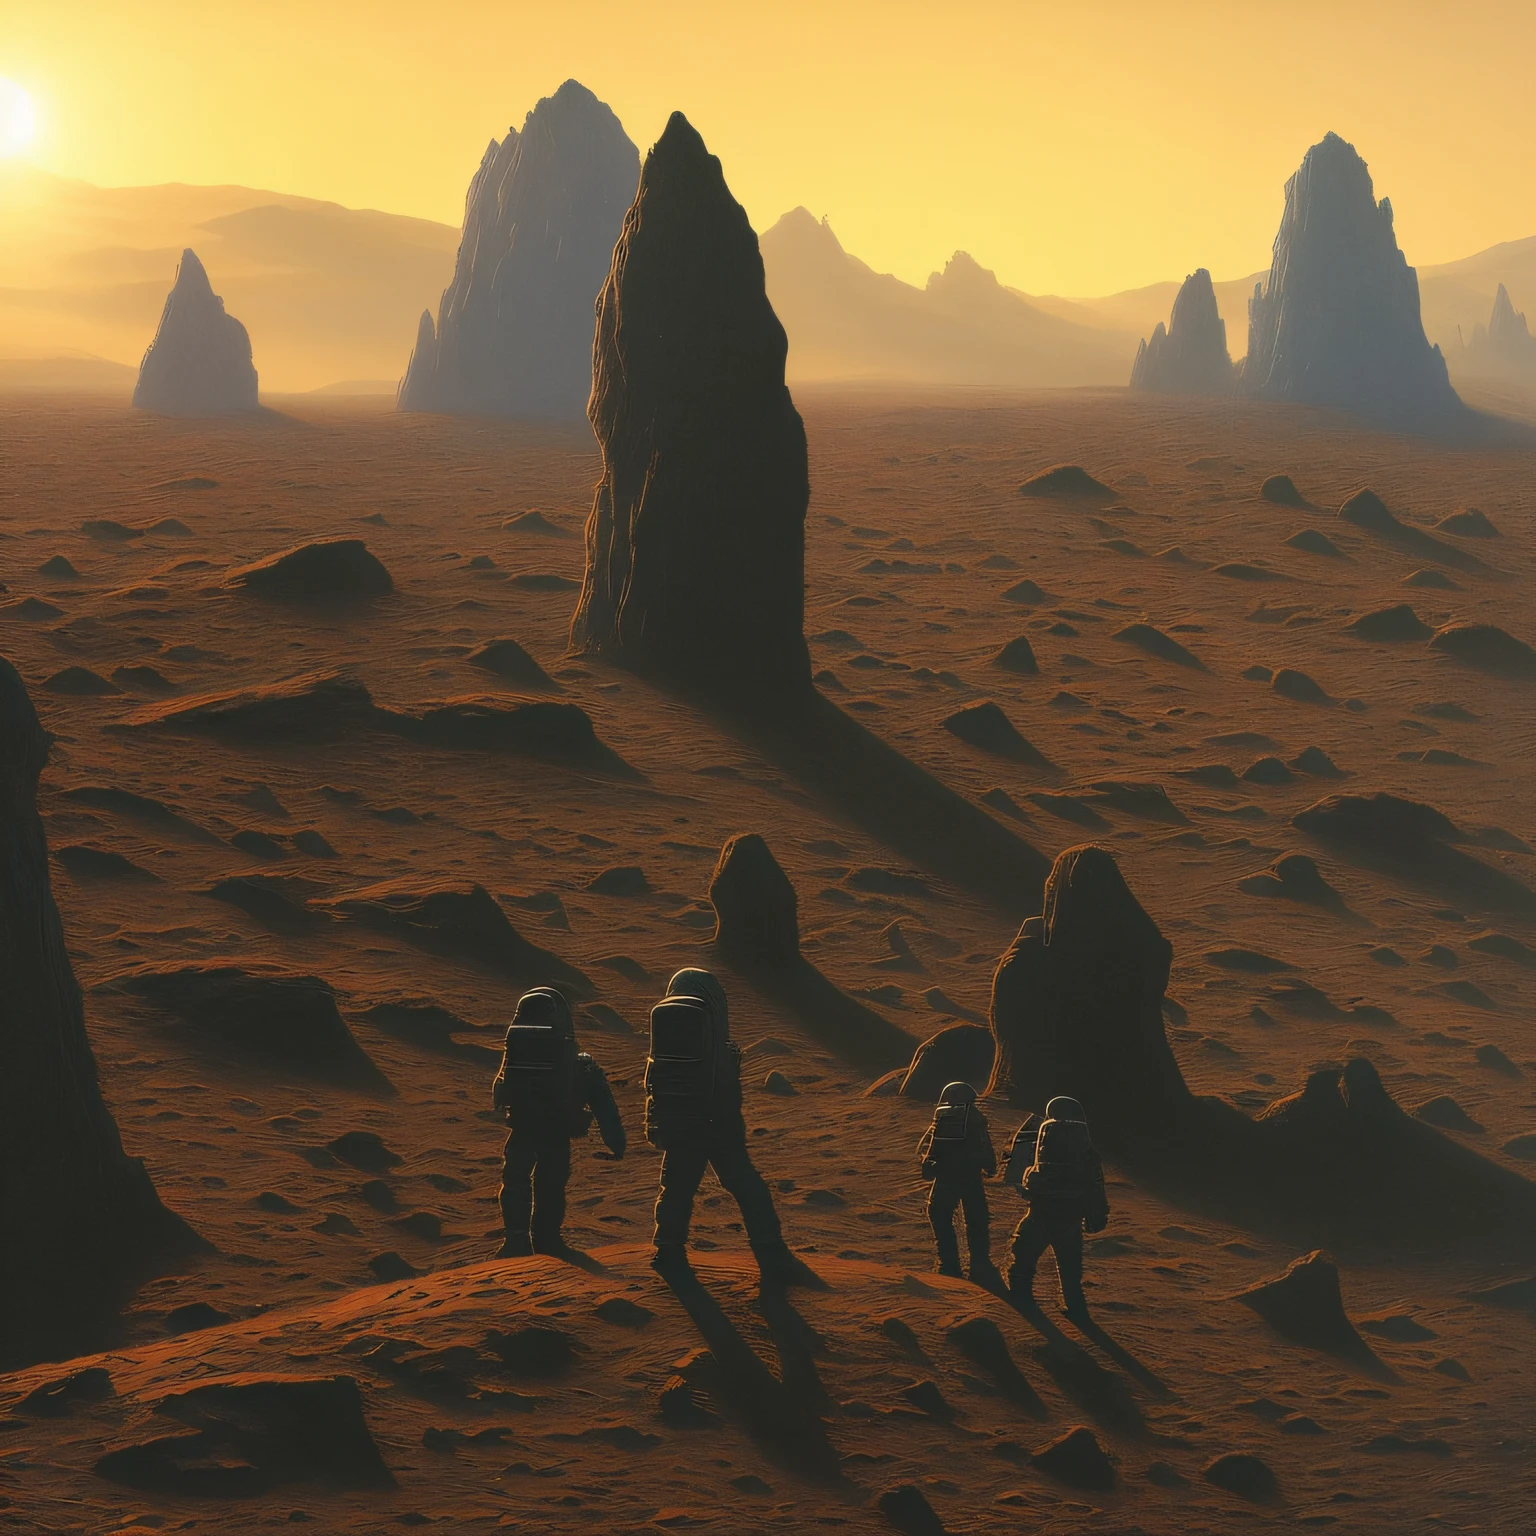 (رسم:1.3) ل,(وحيد:1) رواد الفضاء البشريون يكتشفون بنية غريبة على سطح المريخ, وهج الشمس,(للفنان Zdzislaw Beksinski:1),(فن الموجة البخارية:1)